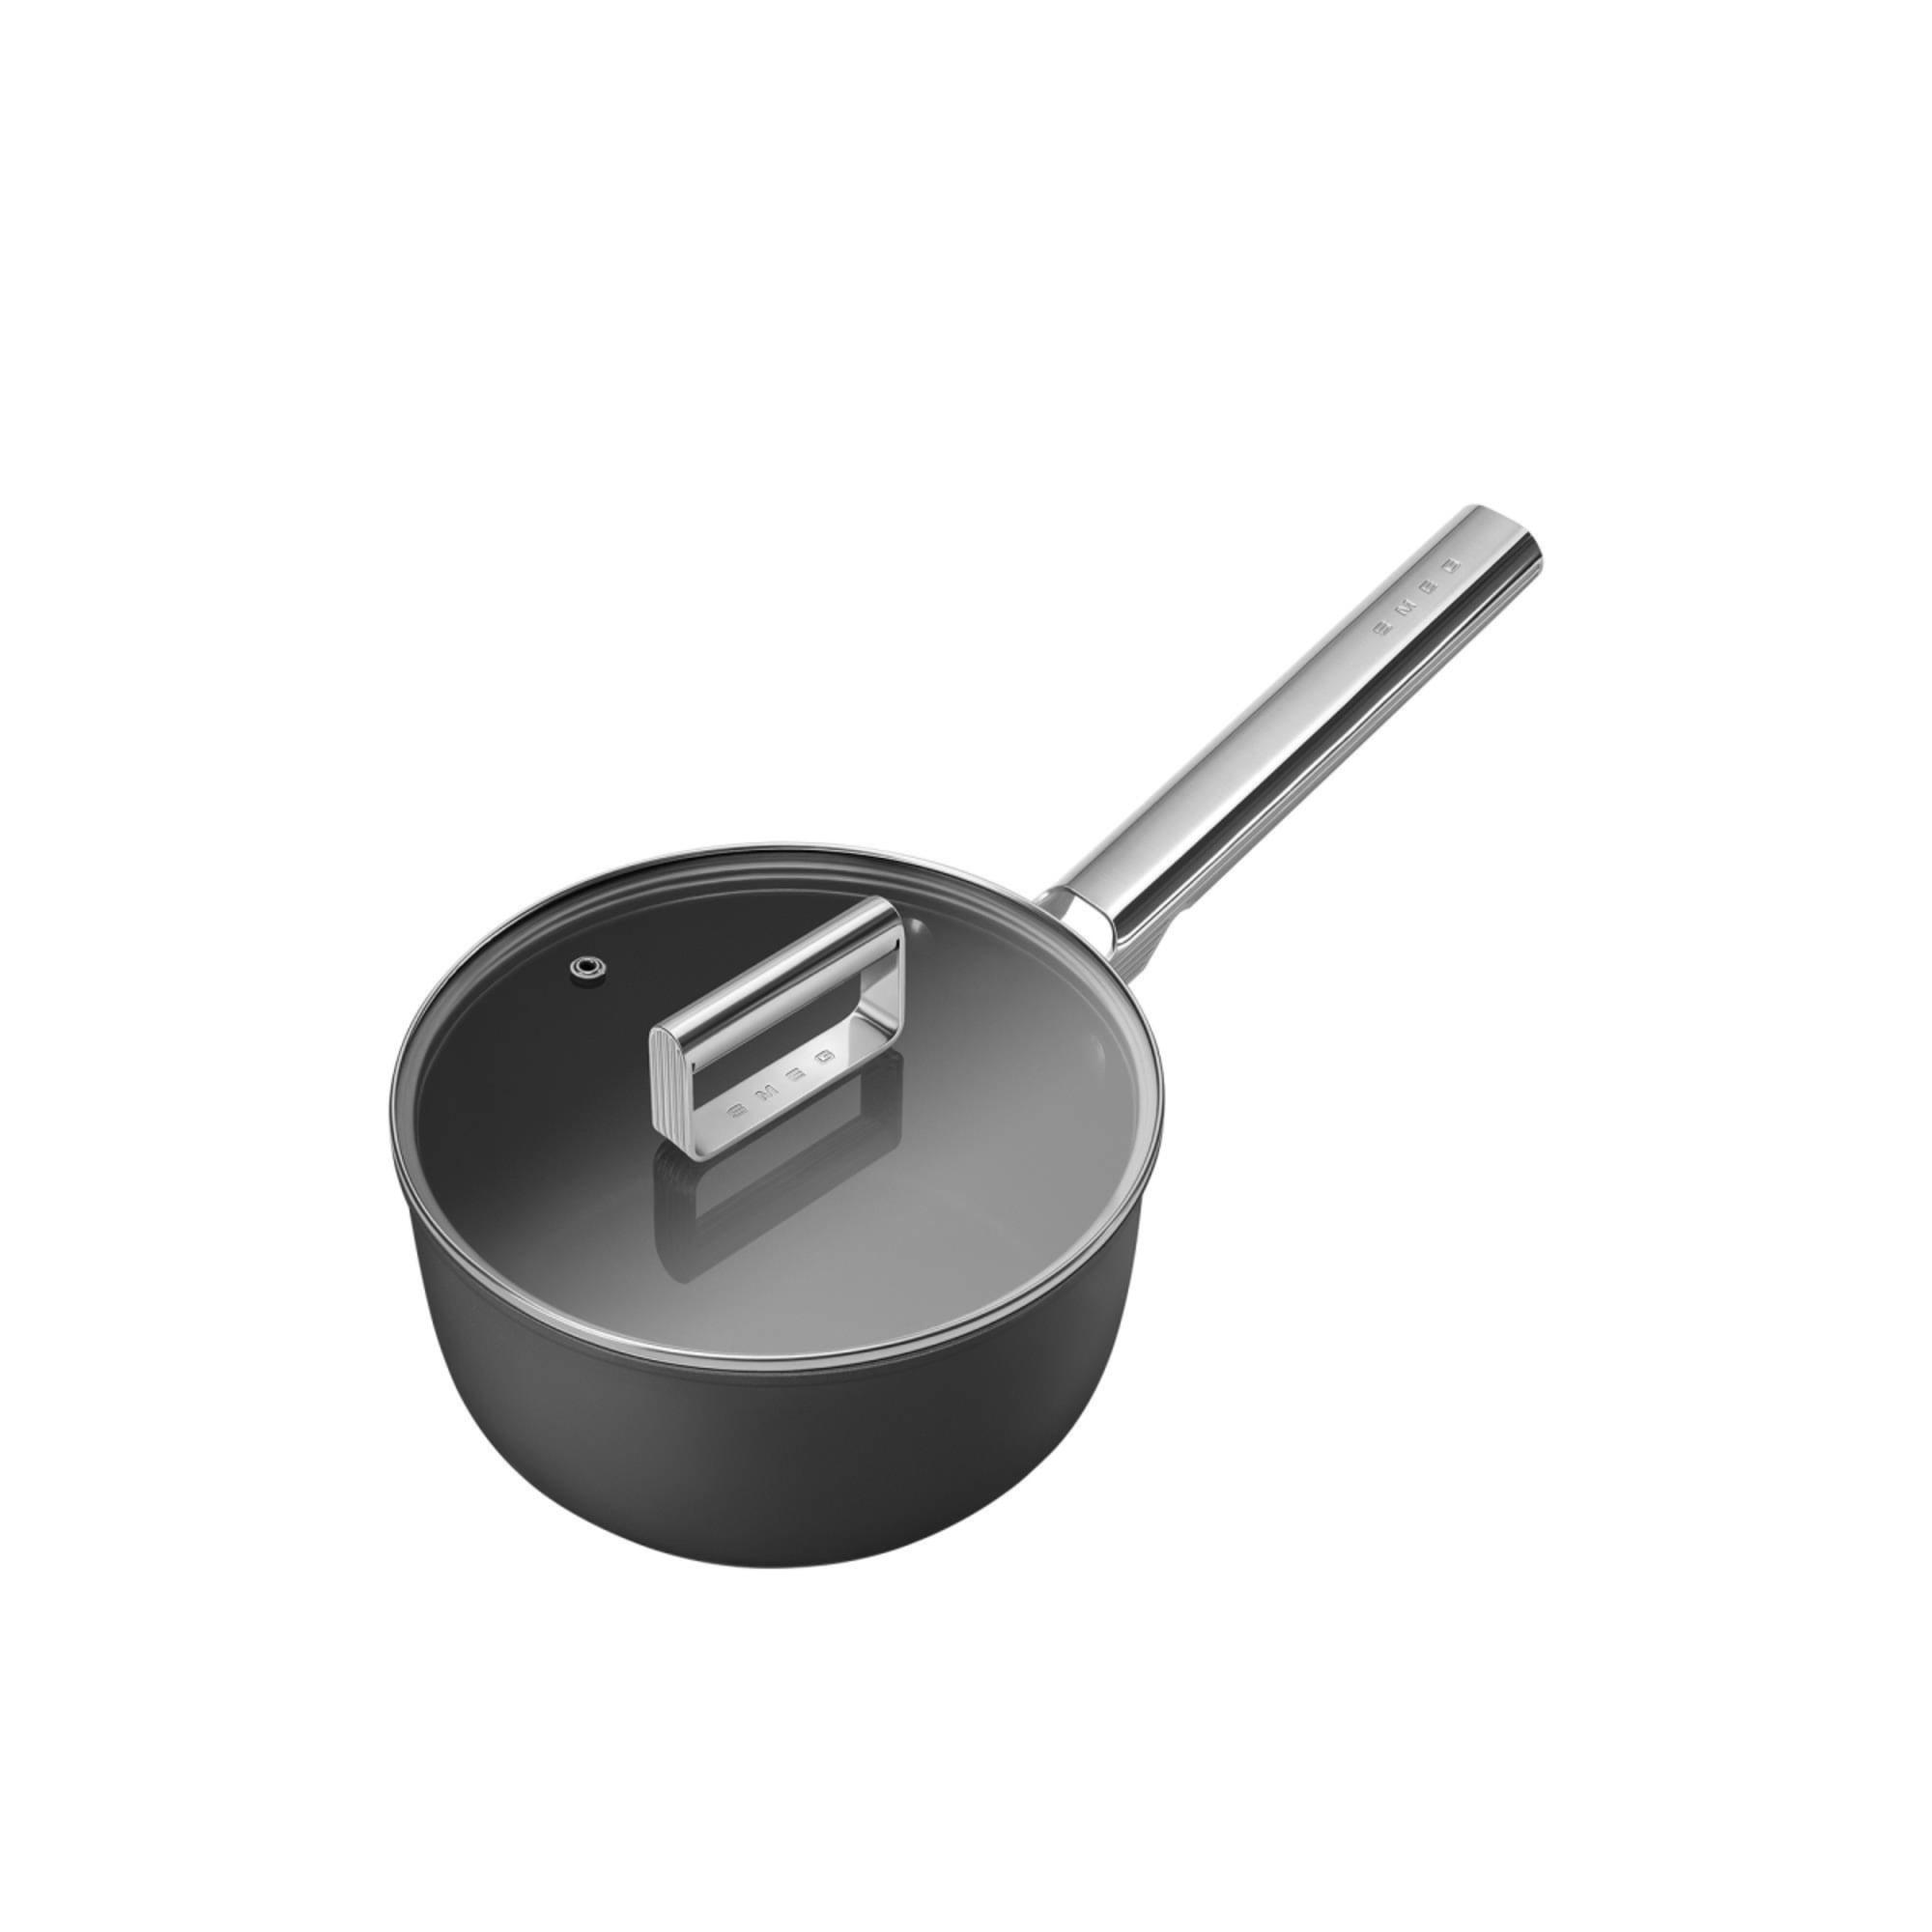 Smeg Non Stick Saucepan with Lid 20cm - 2.7L Black Image 3